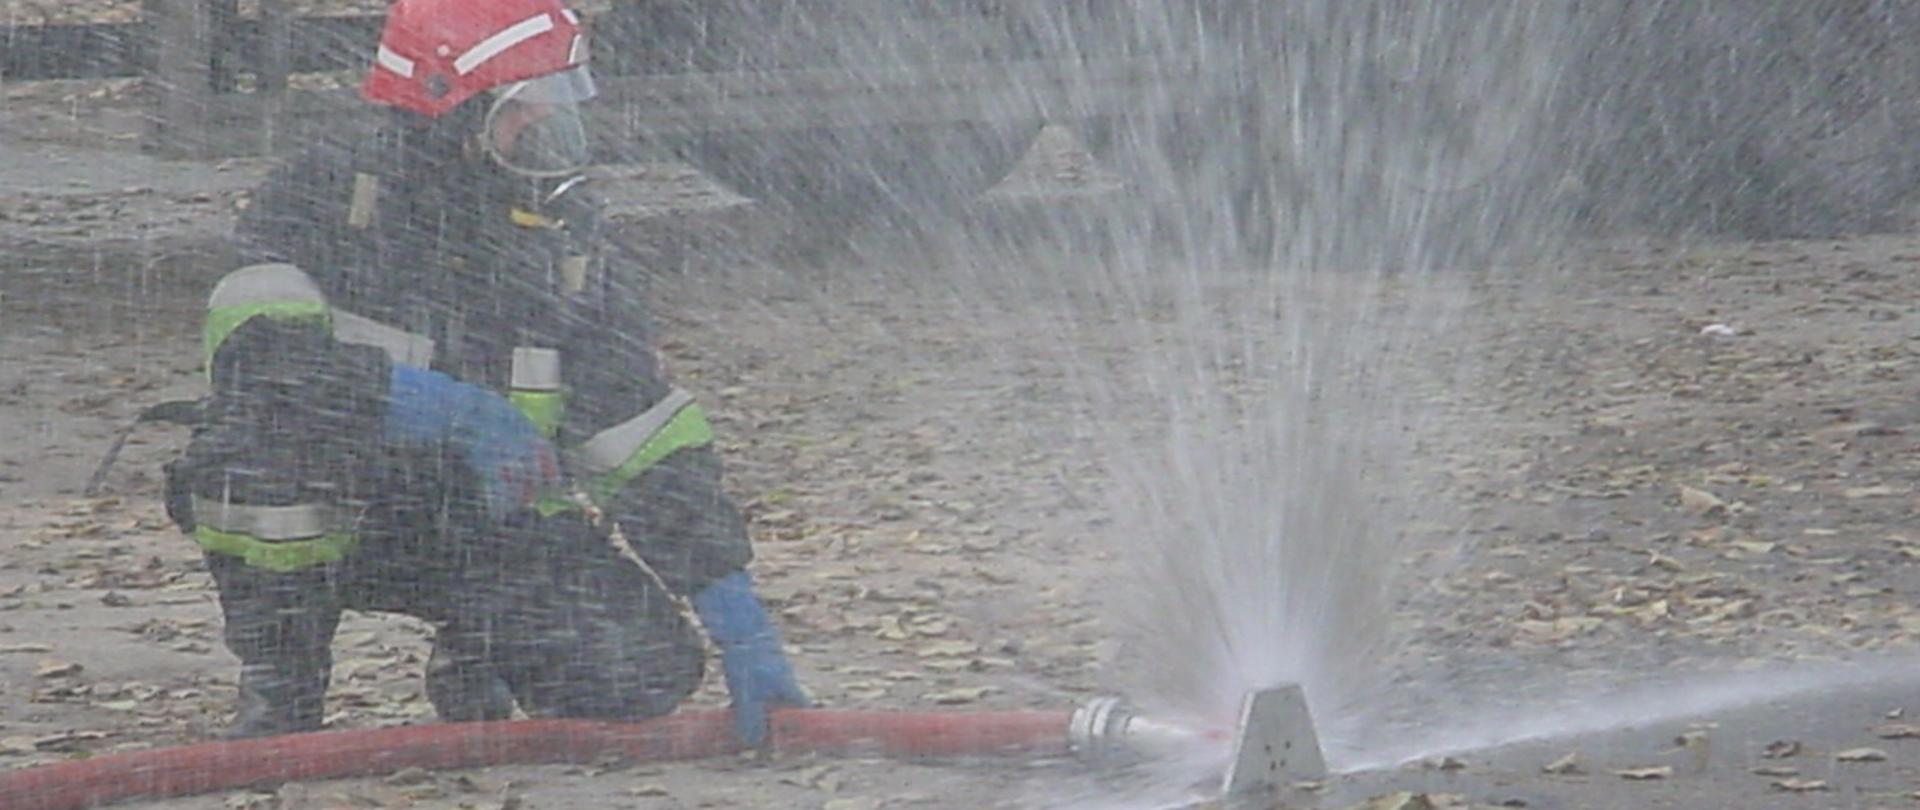 W akcji strażak obsługujący kurtynę wodną